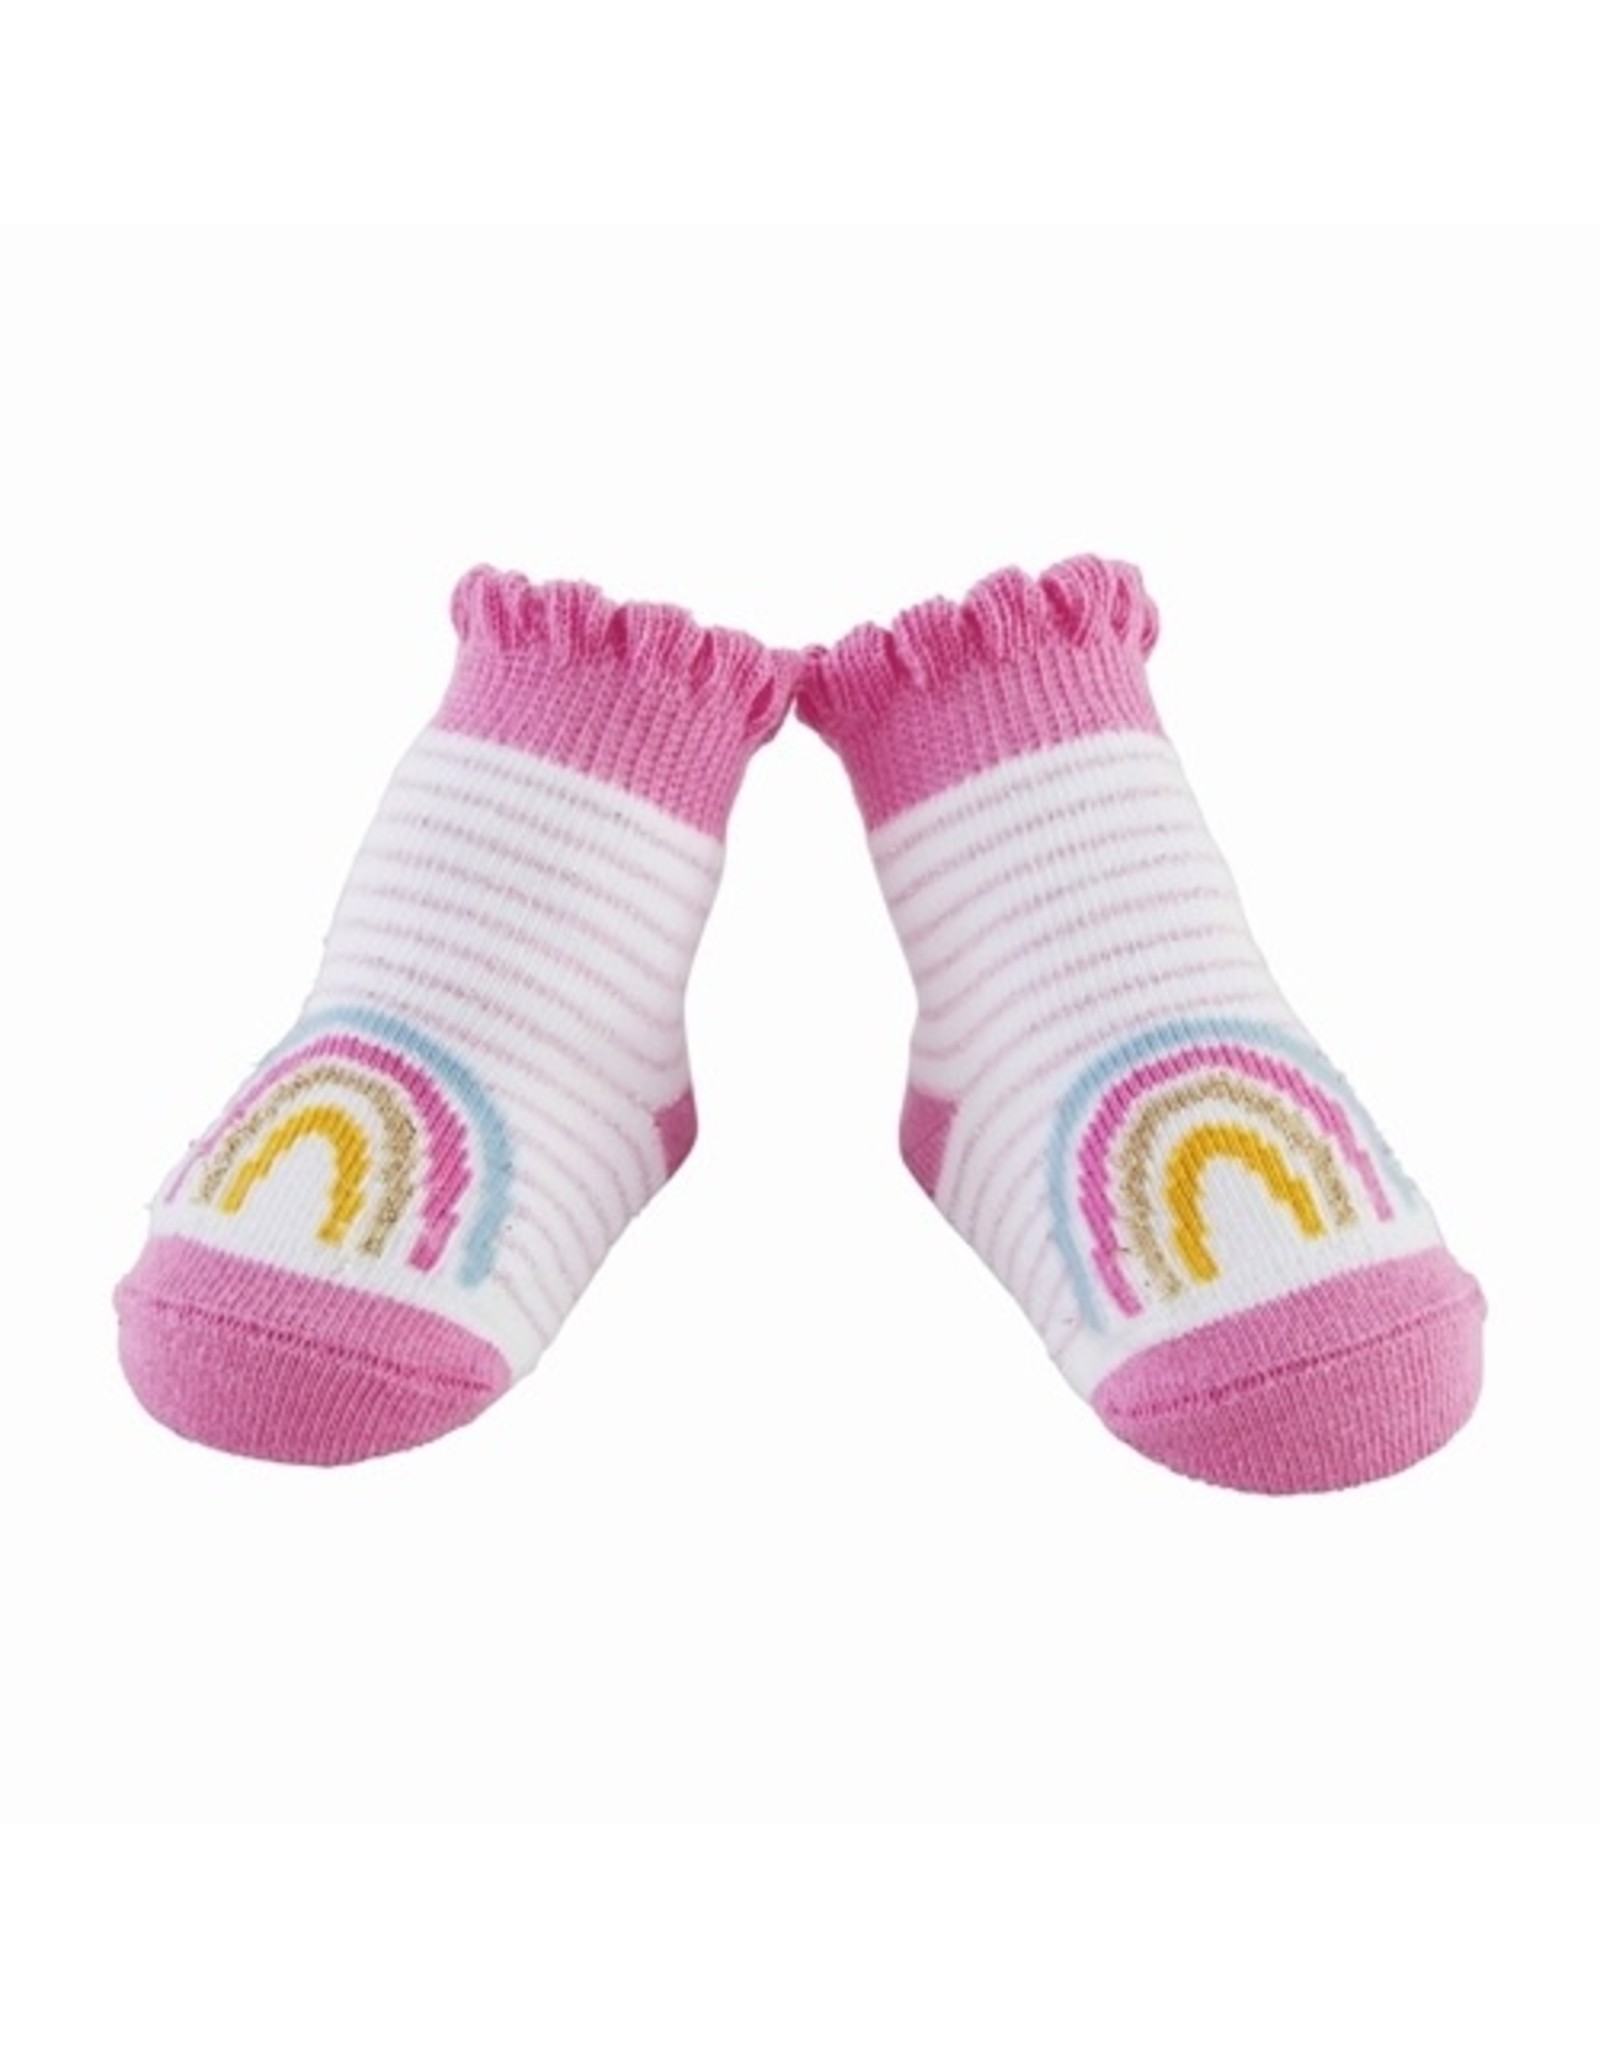 Mudpie Rainbow Stripe Socks